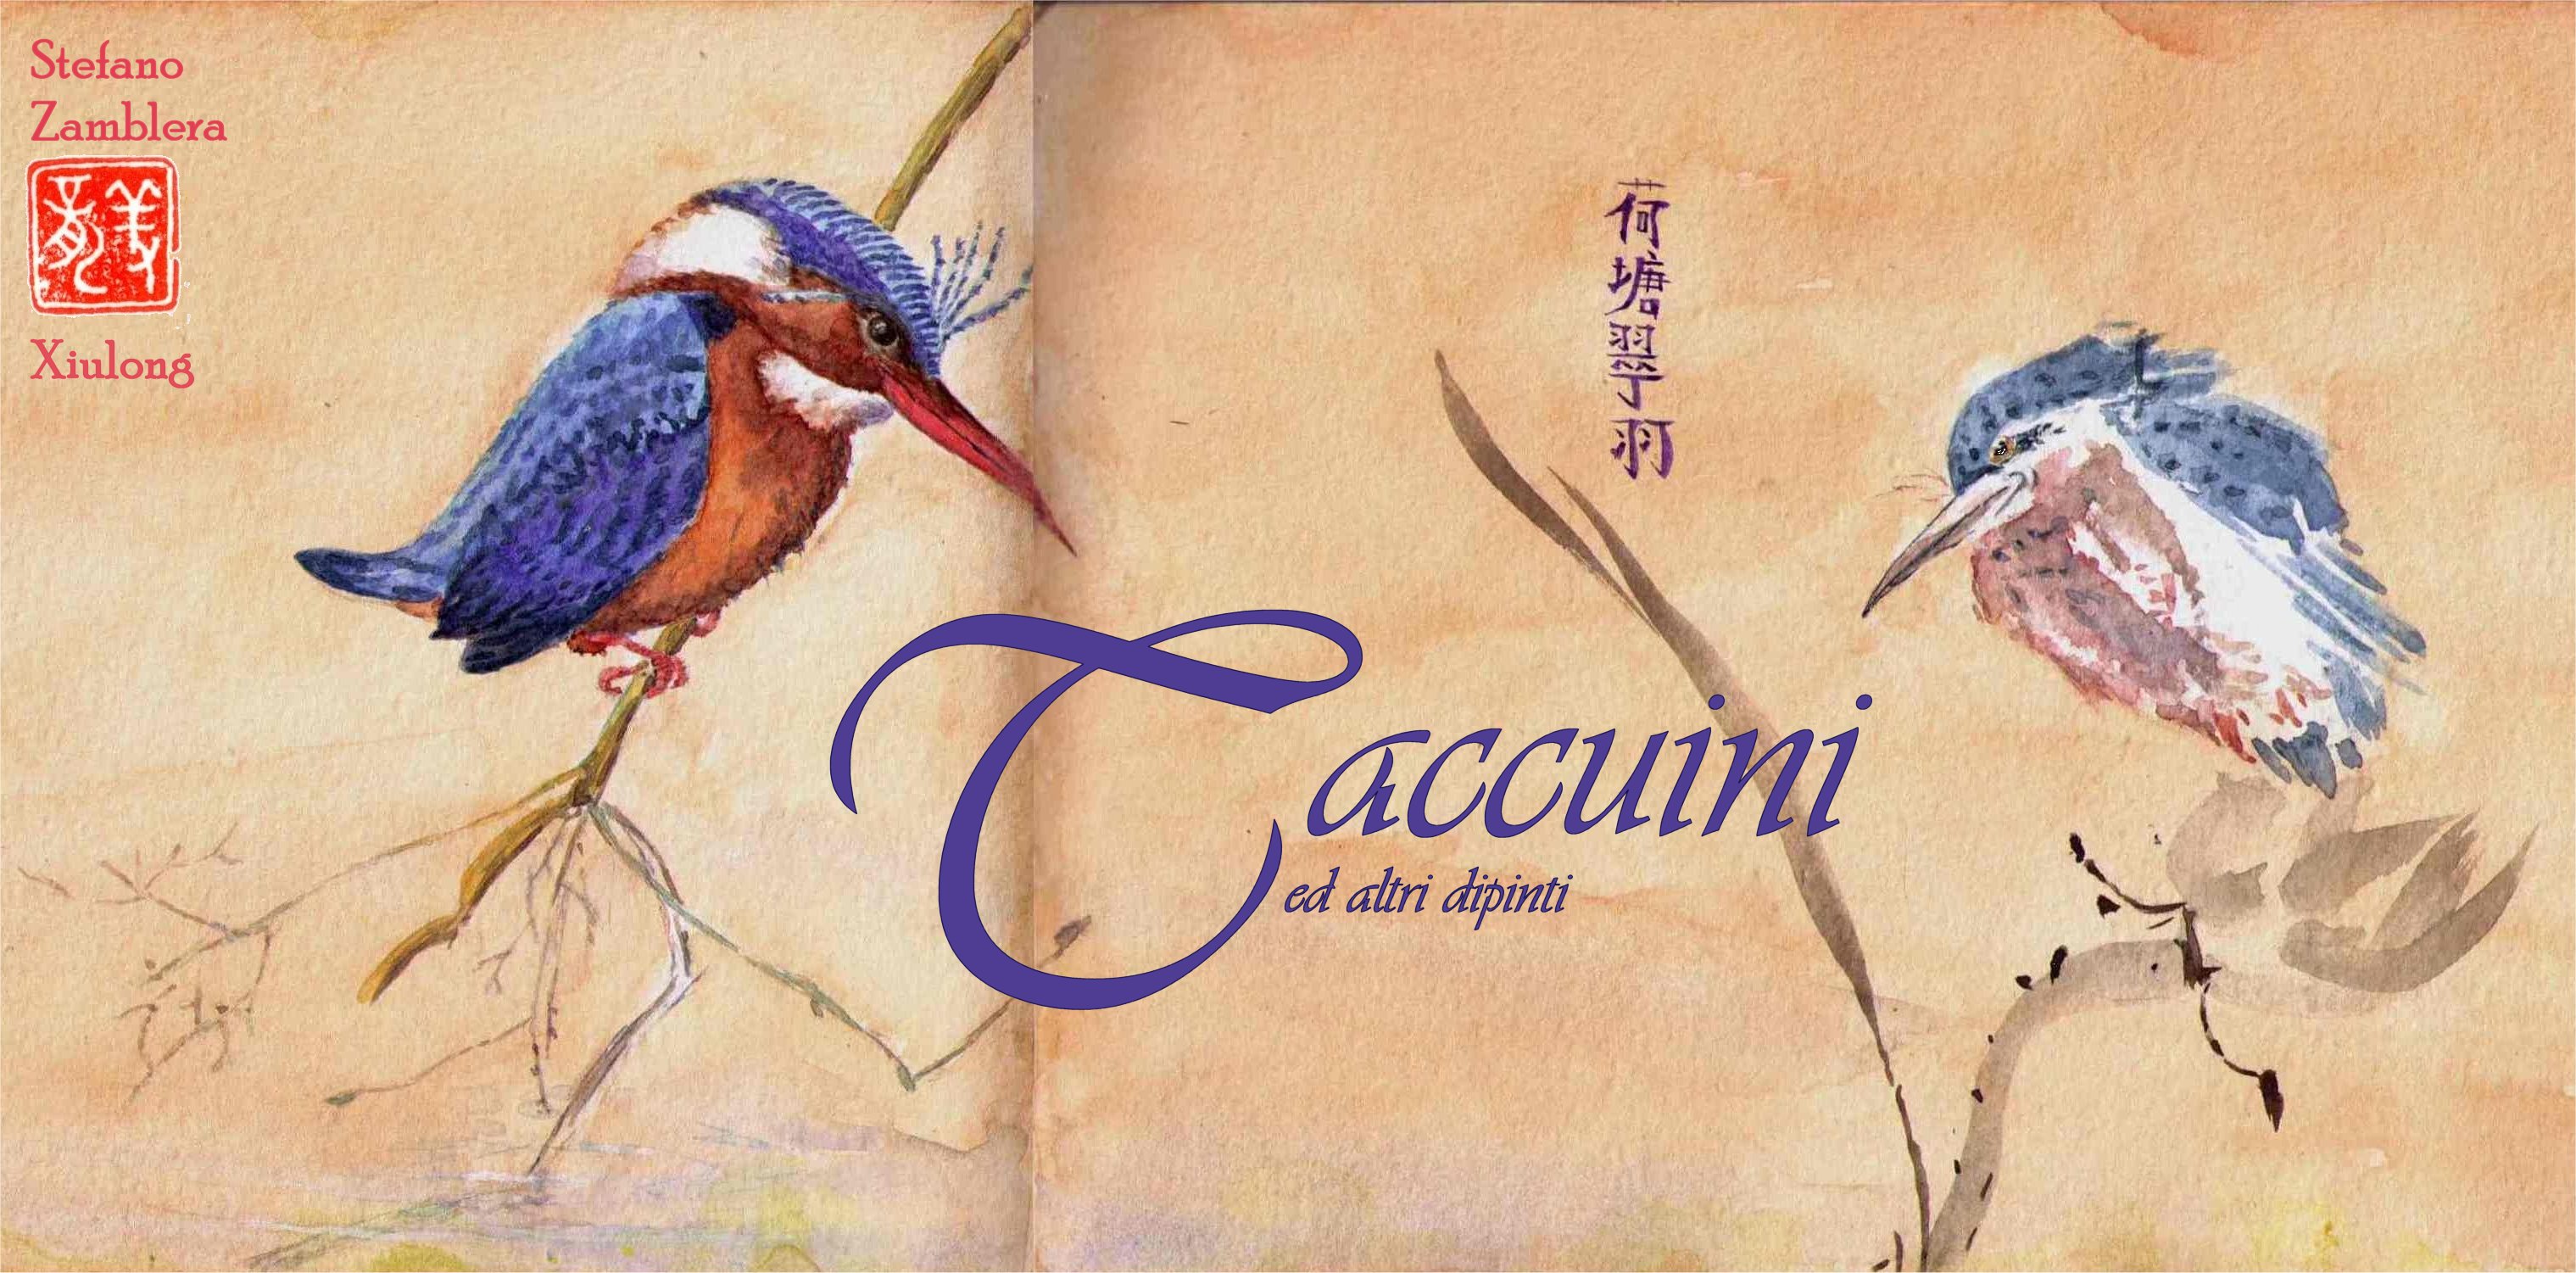 Taccuini ed altri dipinti - Pickwick, Lanciano, Aprile 2013